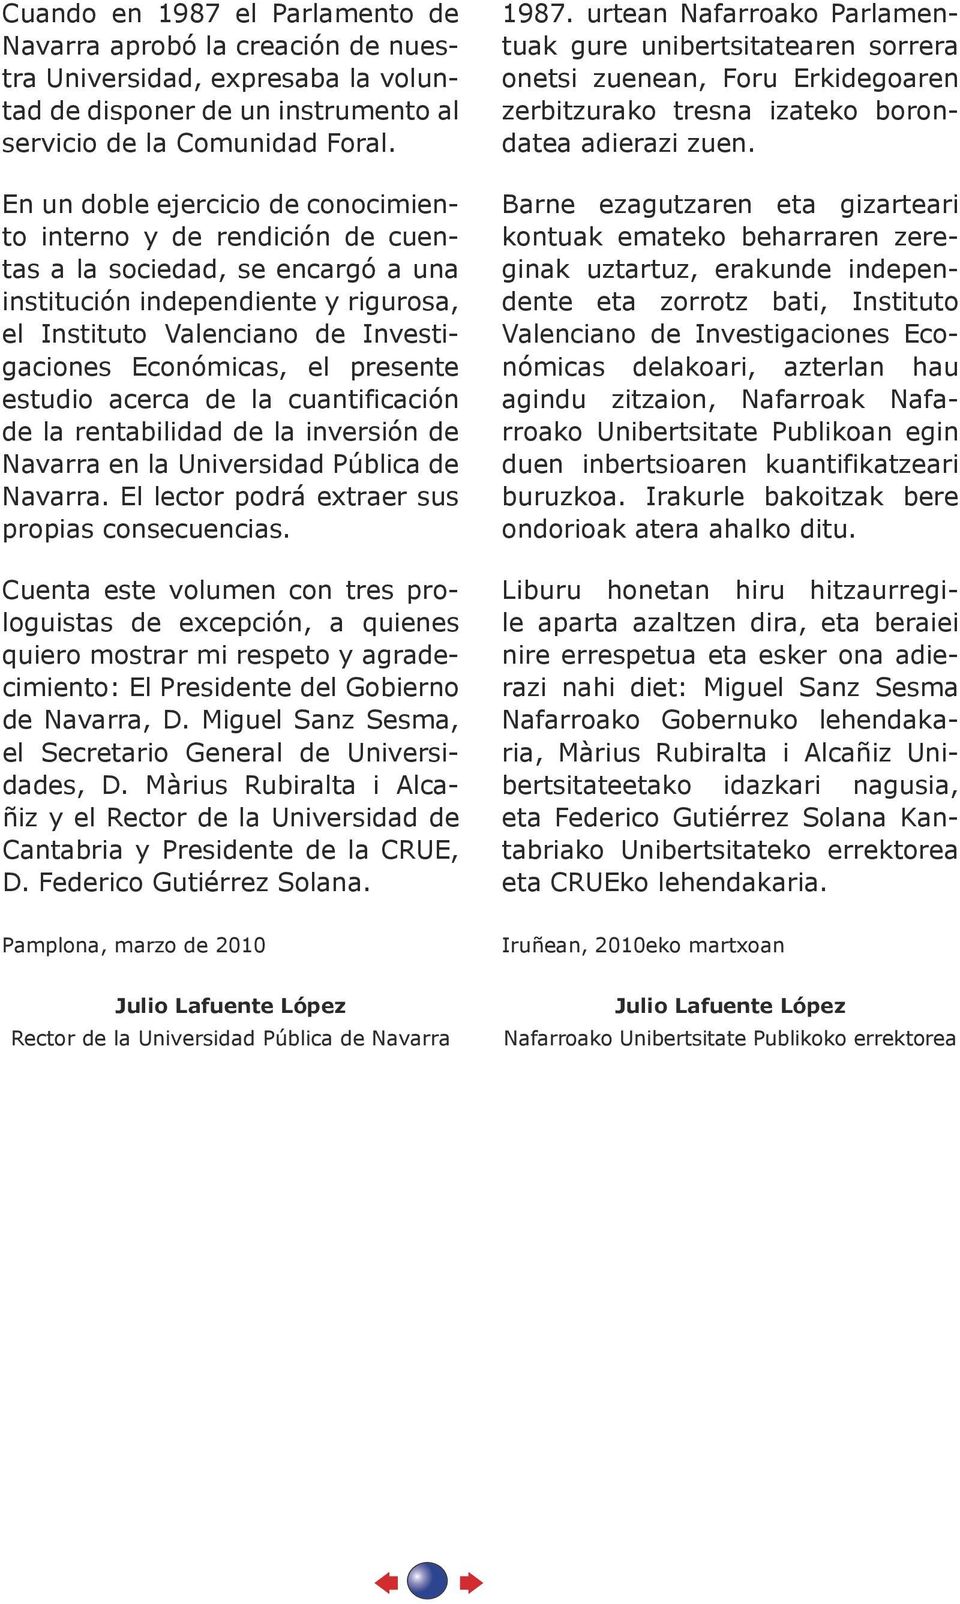 presente estudio acerca de la cuantificación de la rentabilidad de la inversión de Navarra en la Universidad Pública de Navarra. El lector podrá extraer sus propias consecuencias.